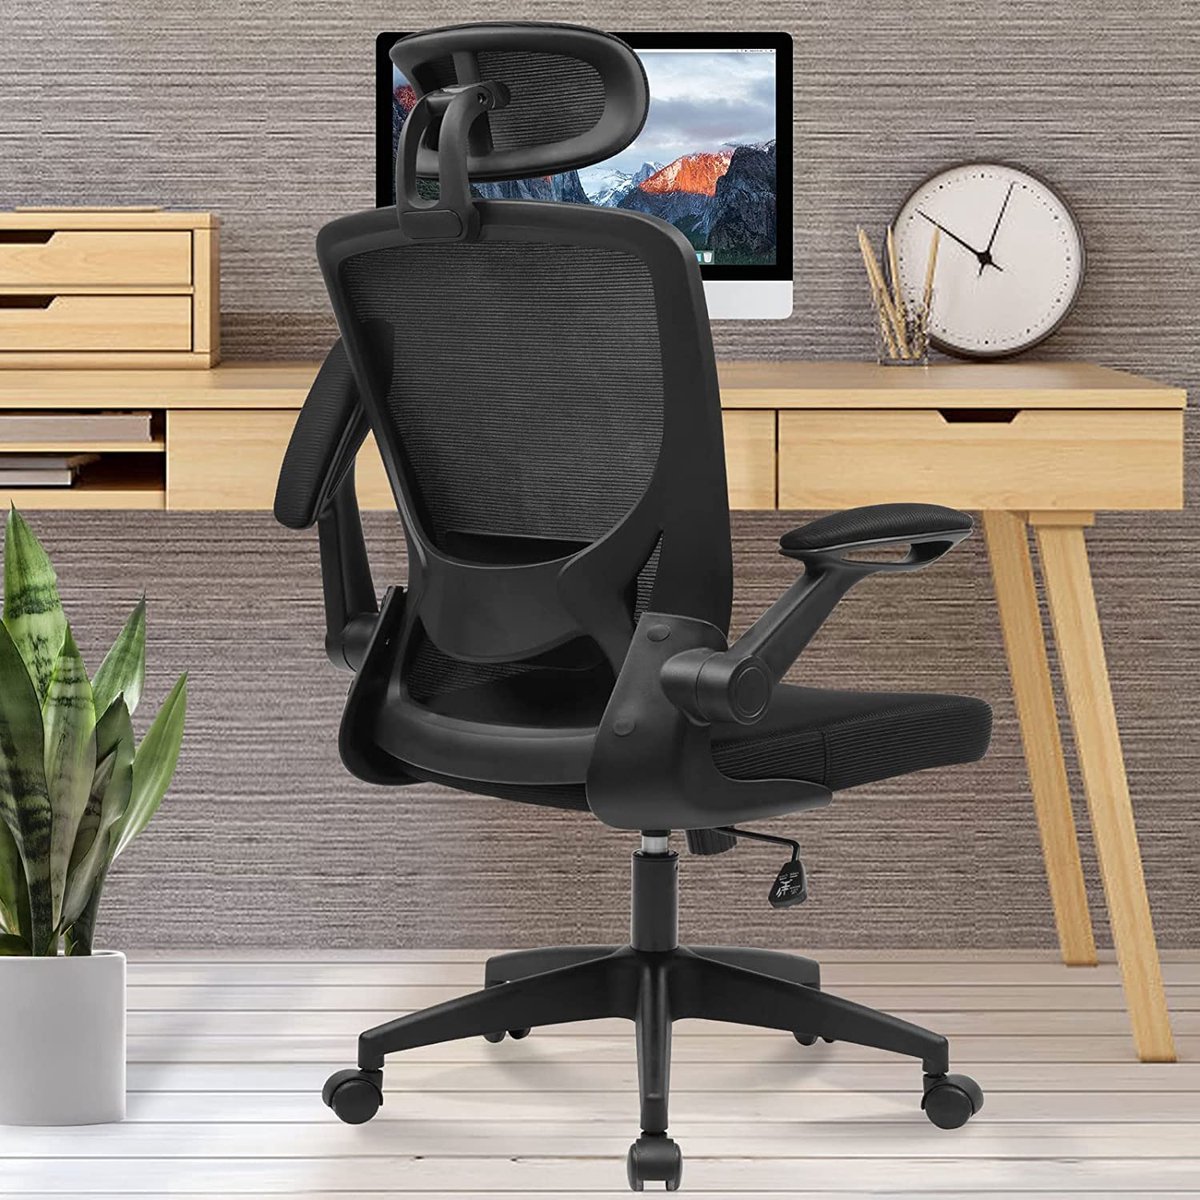 Comfortabele ergonomische bureaustoel: de ergonomische bureaustoel is gemaakt van zeer elastische stof